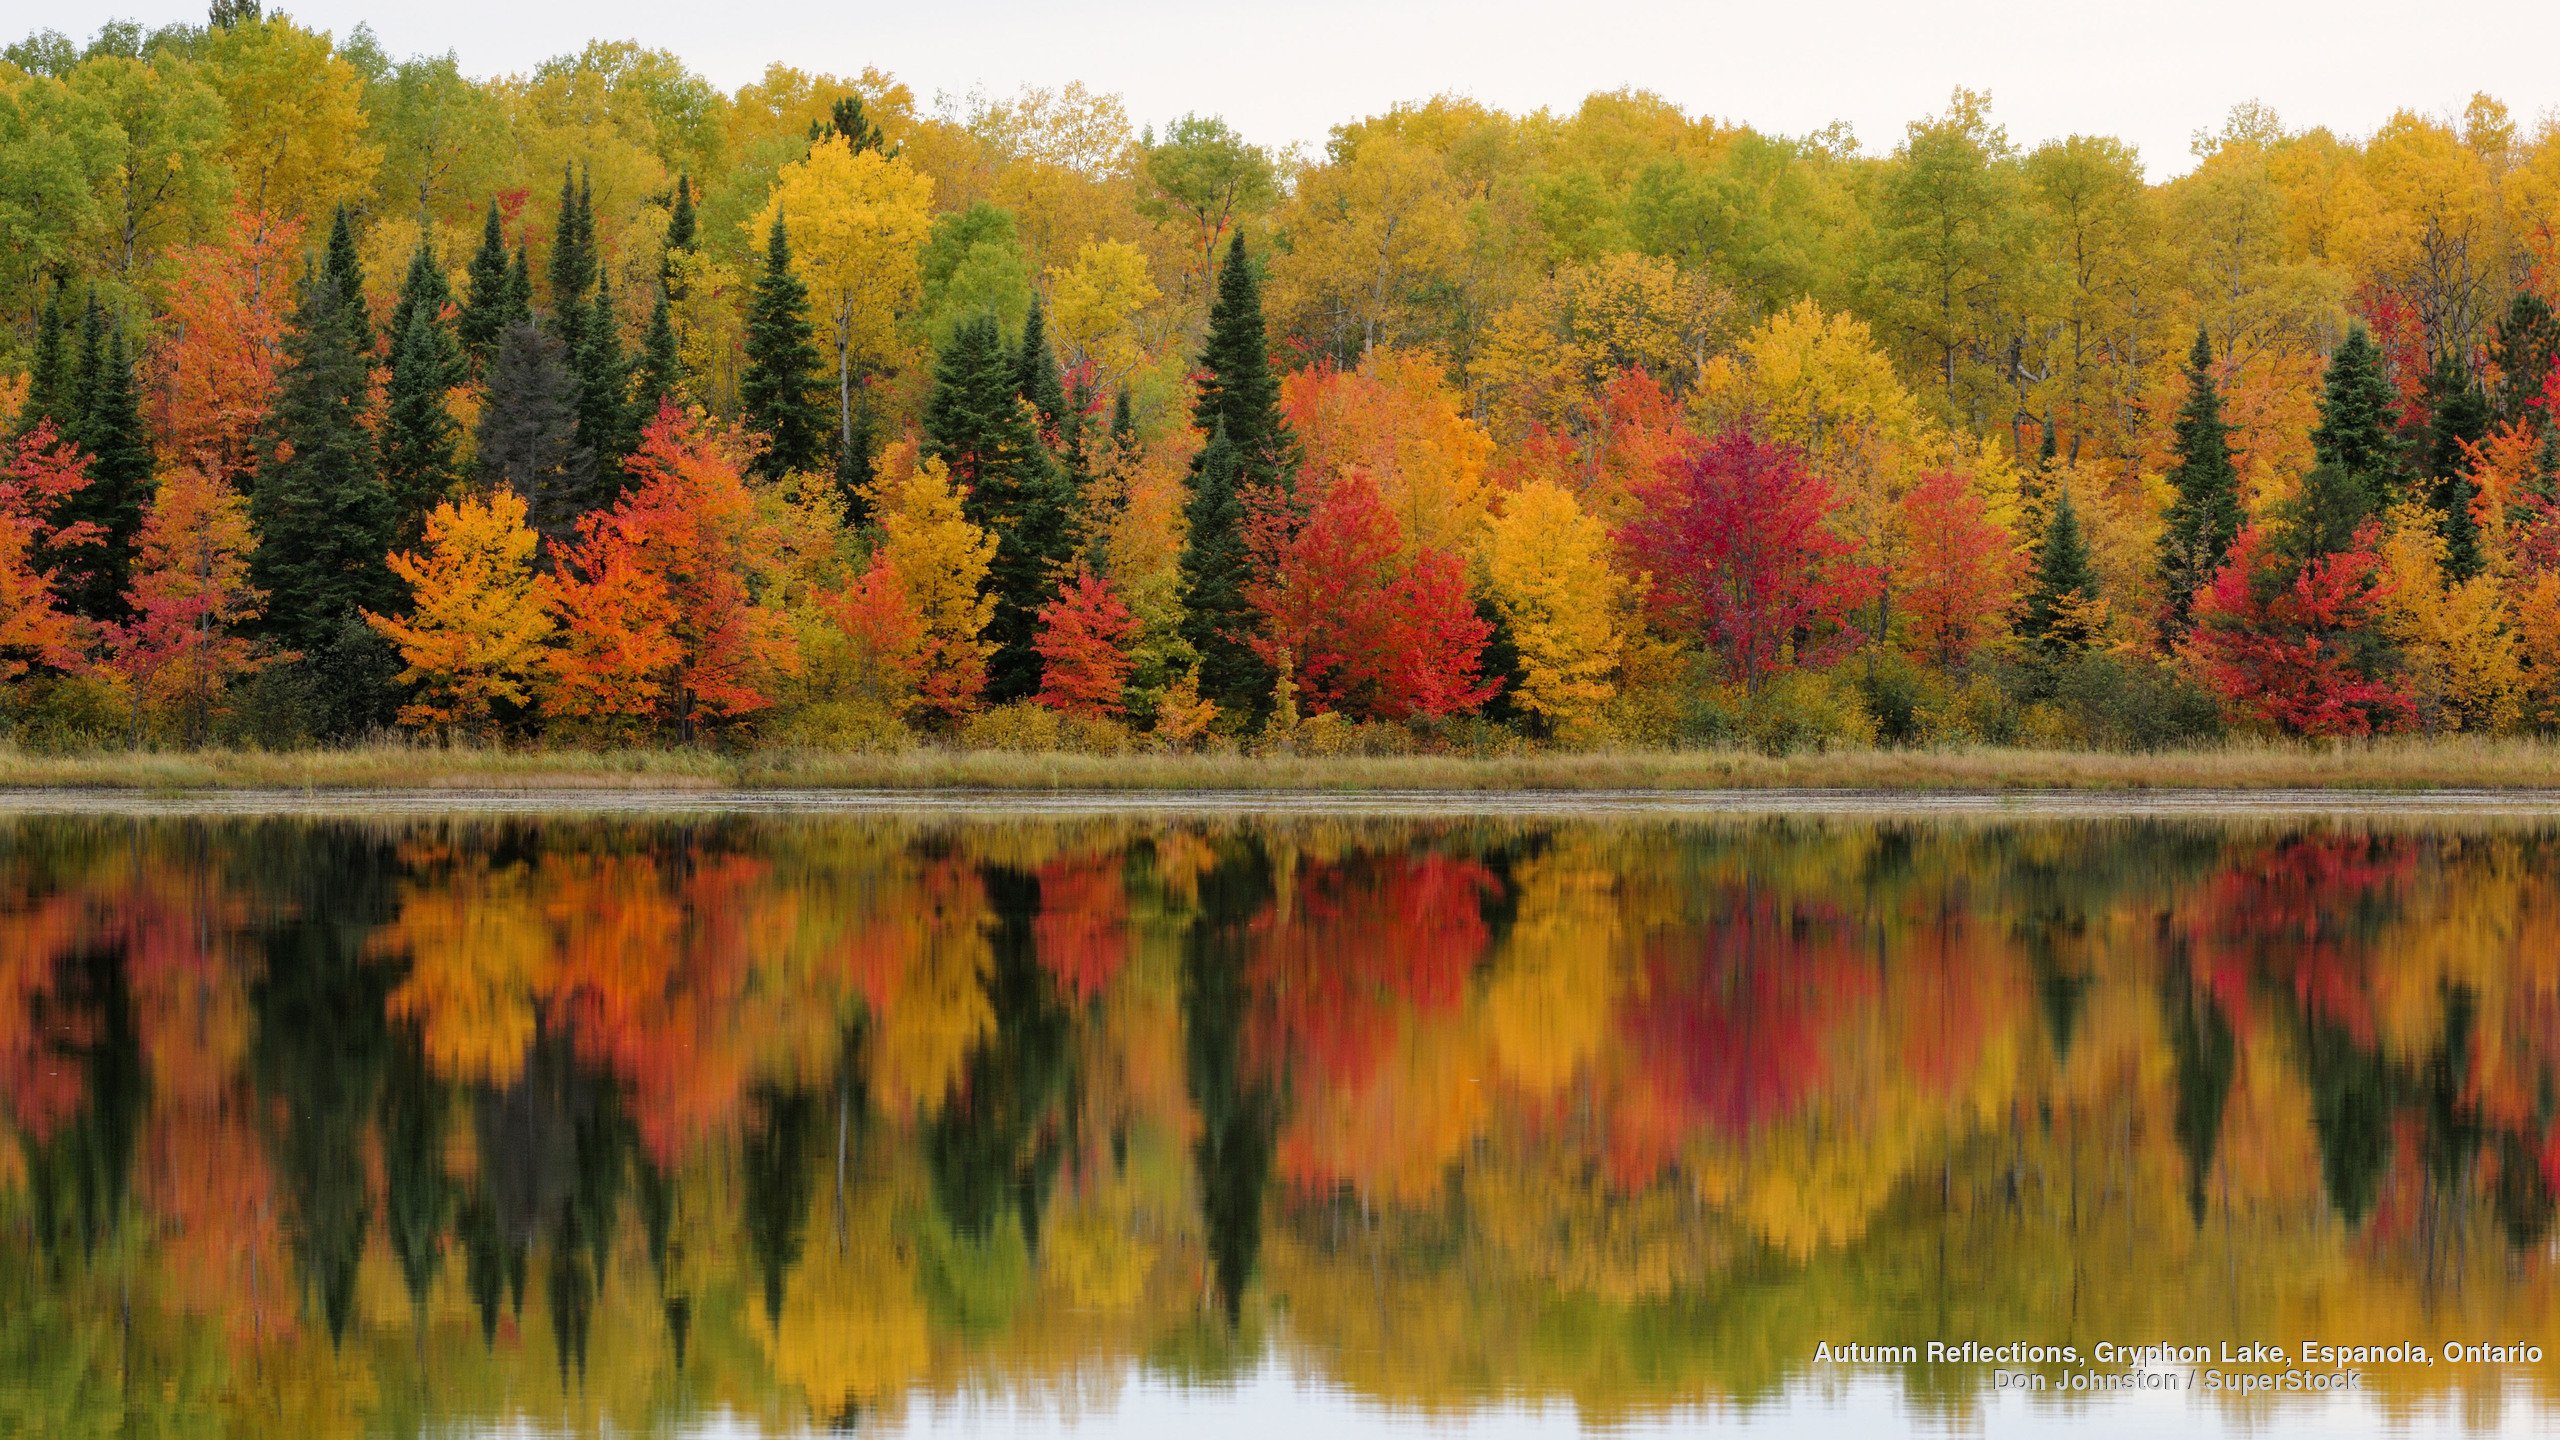 Lake Autumn Forest Beauty Tree Landscape Wallpapers Hd Desktop